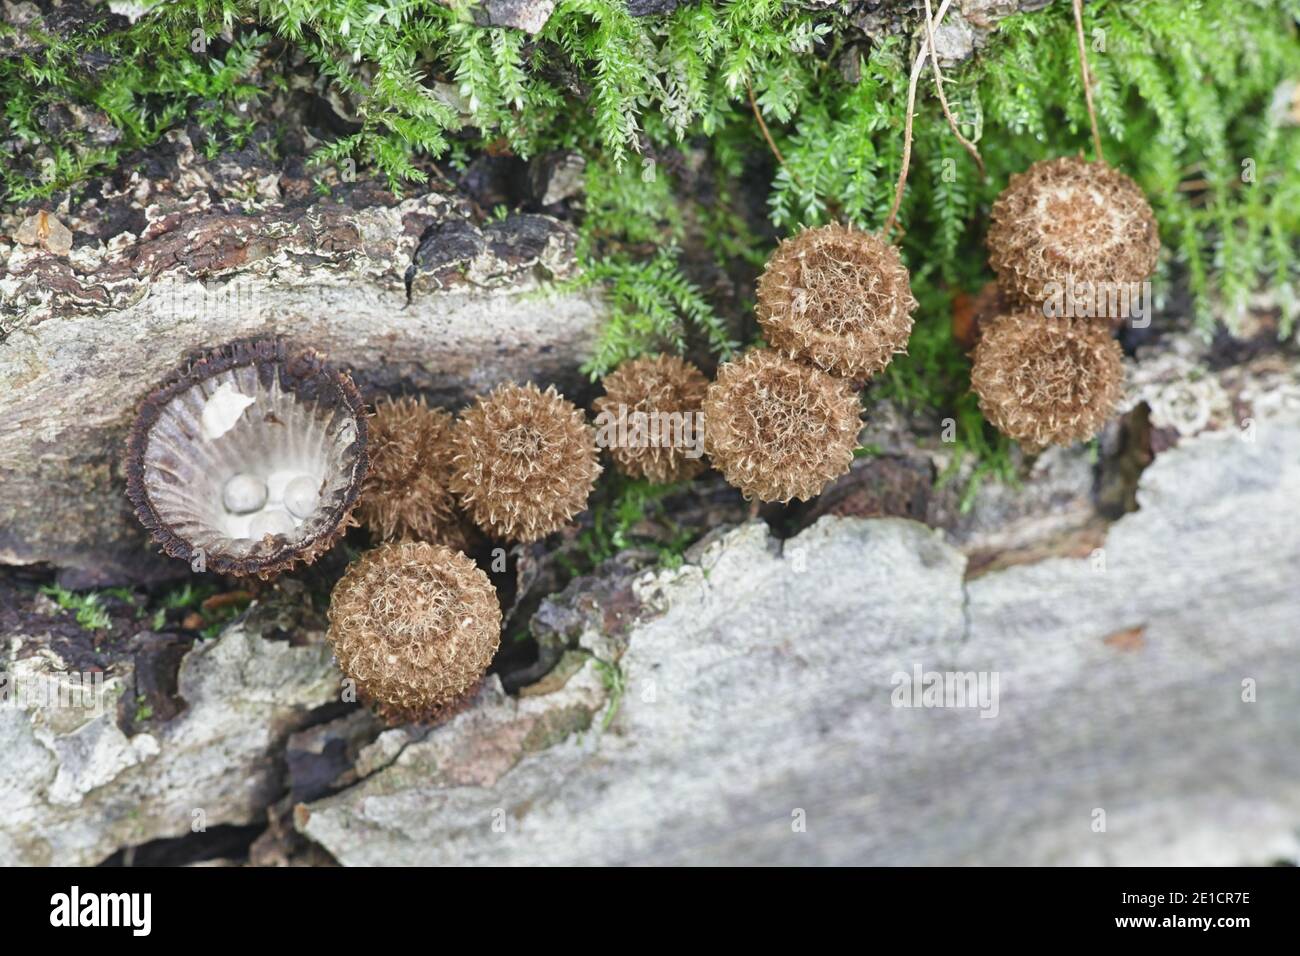 Cyathus striatus, connu sous le nom de nid d'oiseau à cannelures champignon ou splash cup, les champignons de la Finlande Banque D'Images